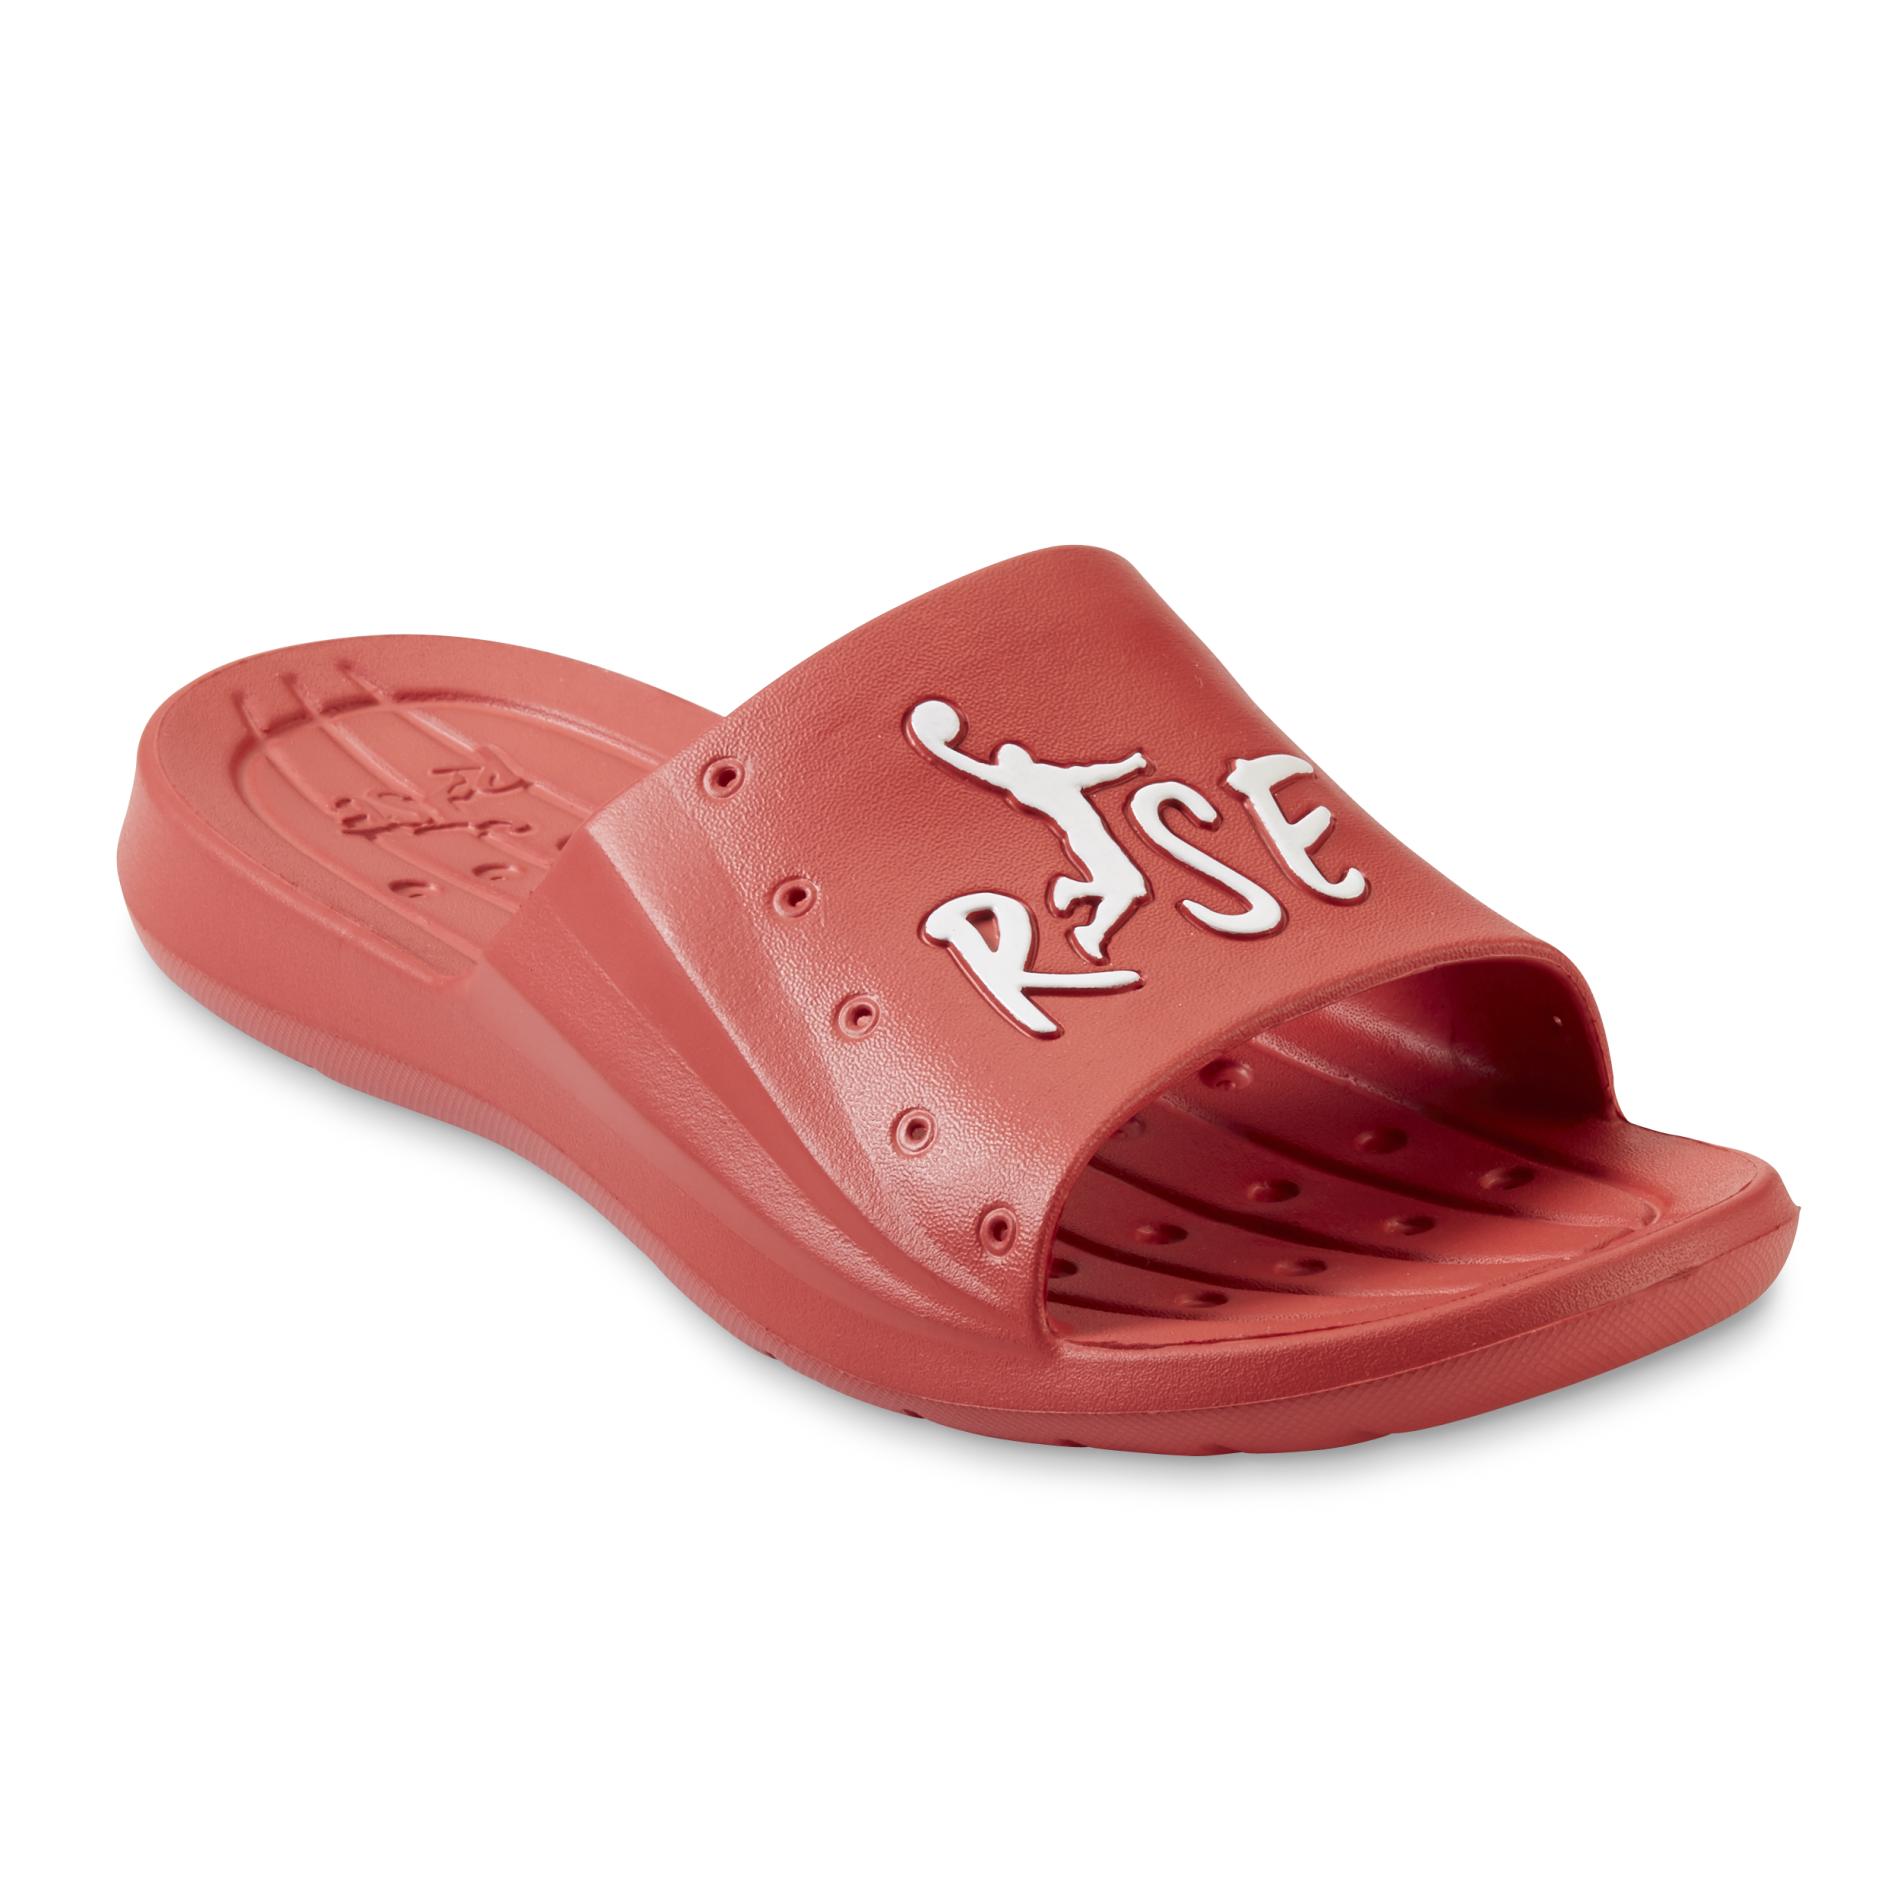 Risewear Men's Flash Slide Sandal - Red